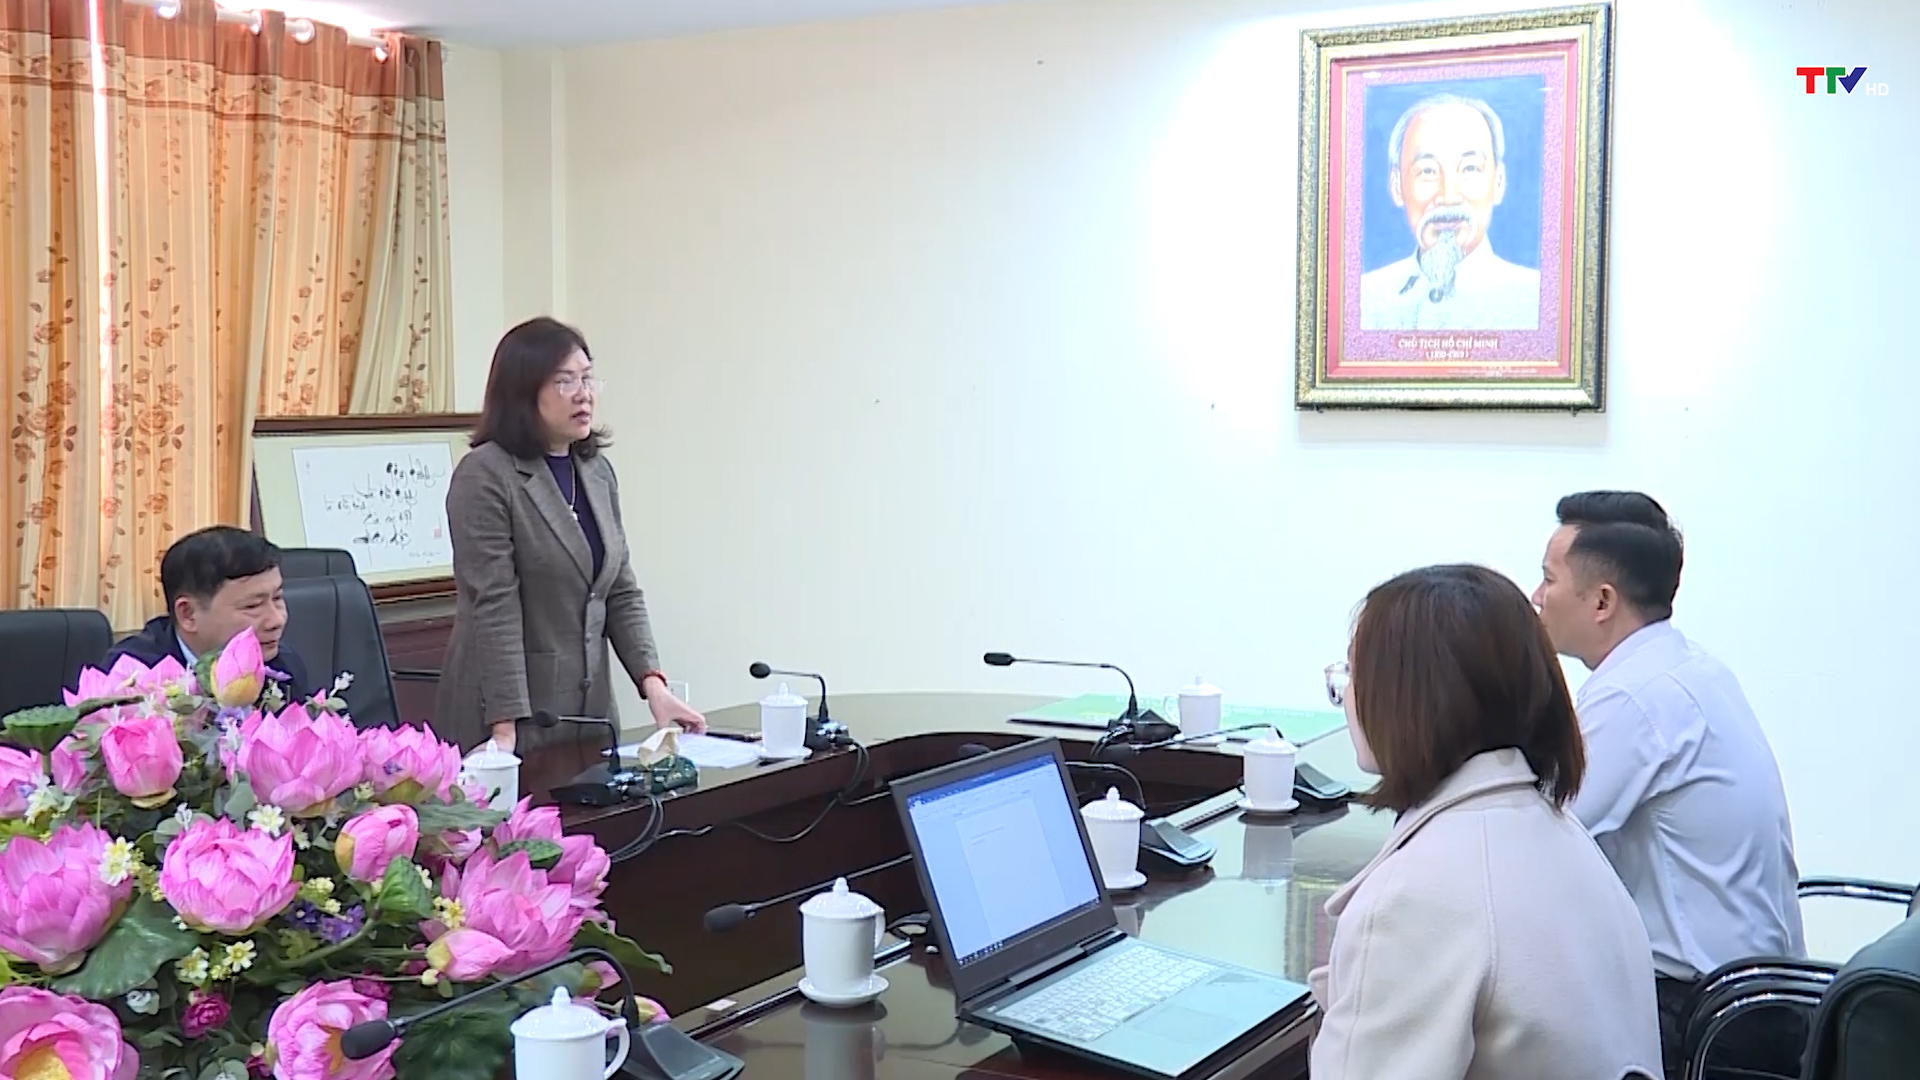 Ủy ban MTTQ tỉnh Thanh Hóa tiếp nhận quà Tết cho người dân khó khăn - Ảnh 3.